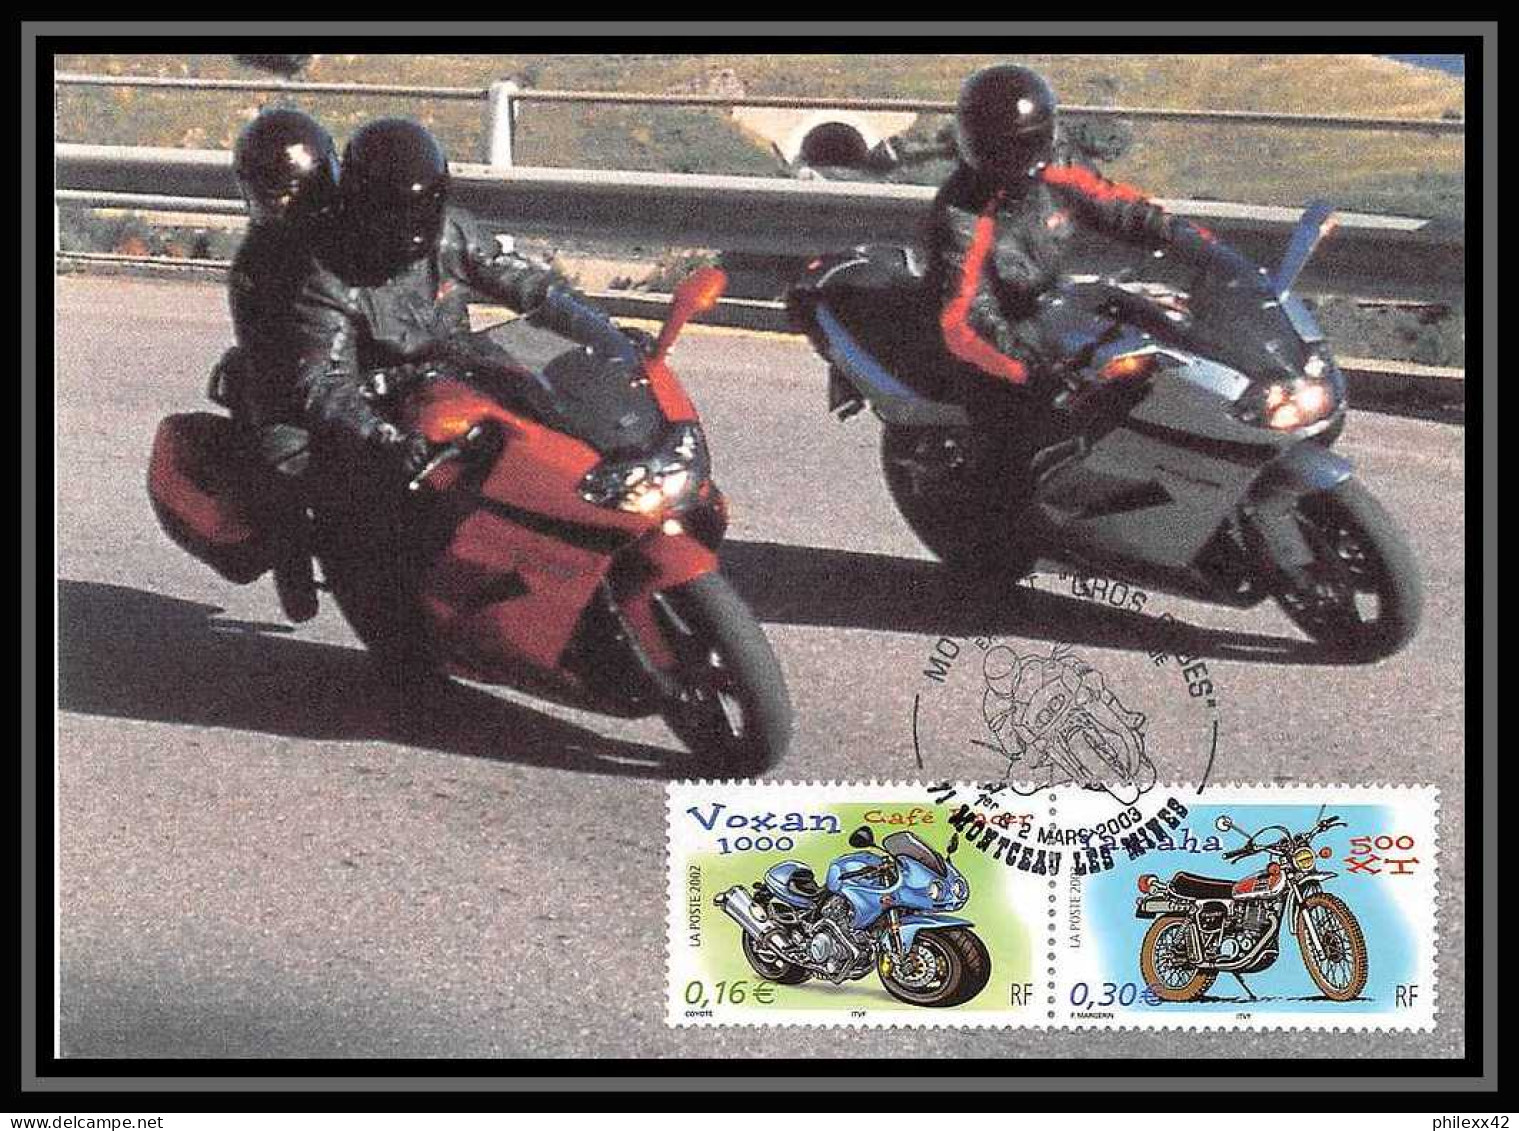 5335/ Carte maximum card France N°3508/3517 motos moto complet édition sans nom fdc 2003 montceau les mines